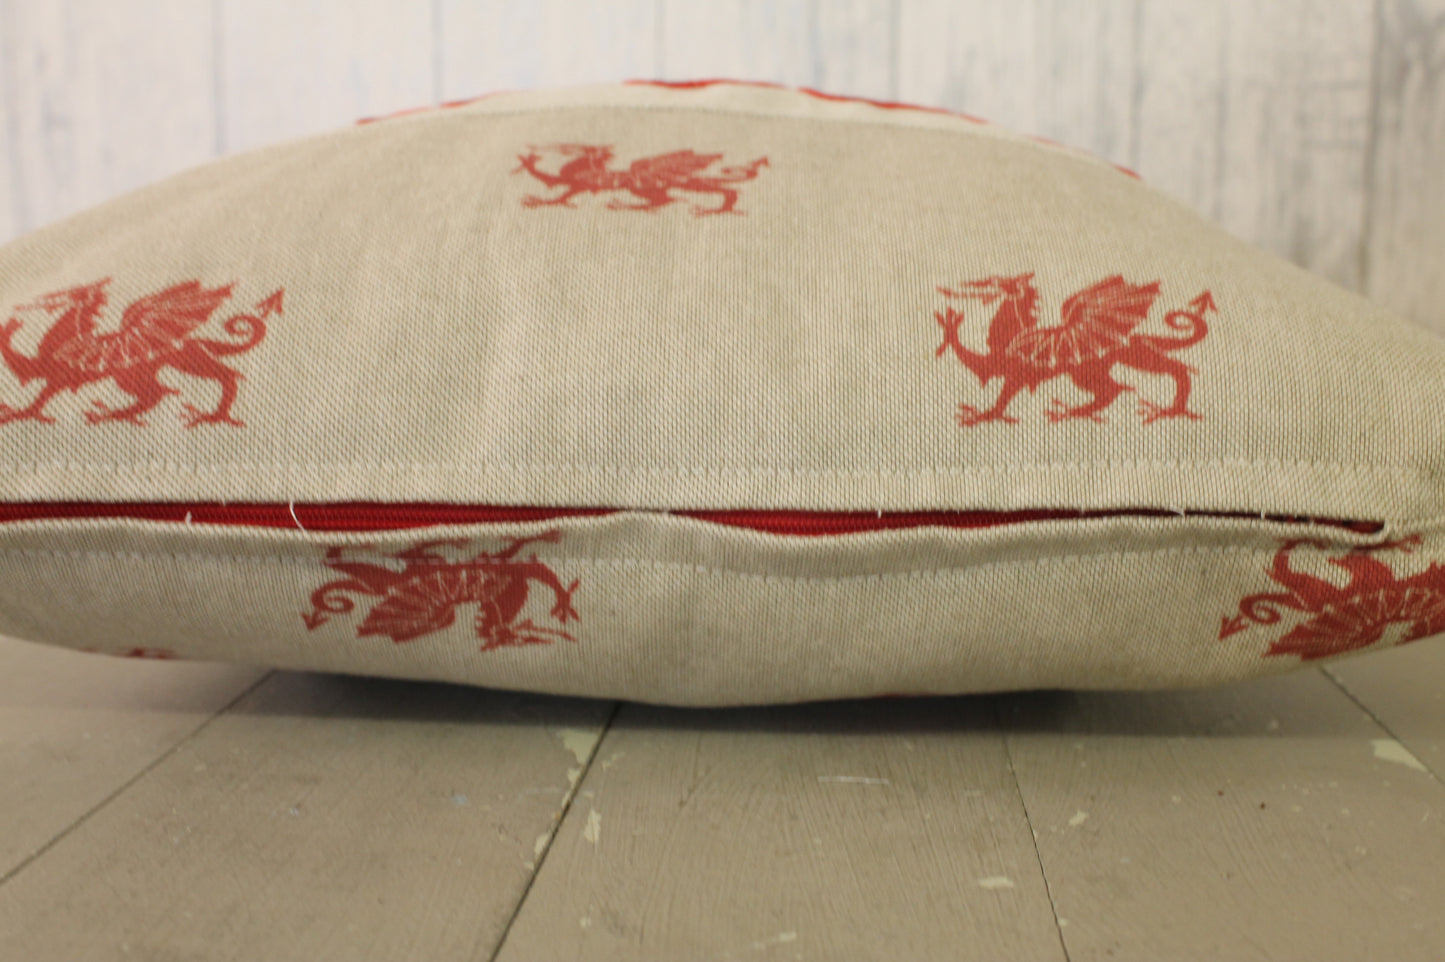 Cwtch Cushion- 16" Welsh Dragon  Cwtch Cushion